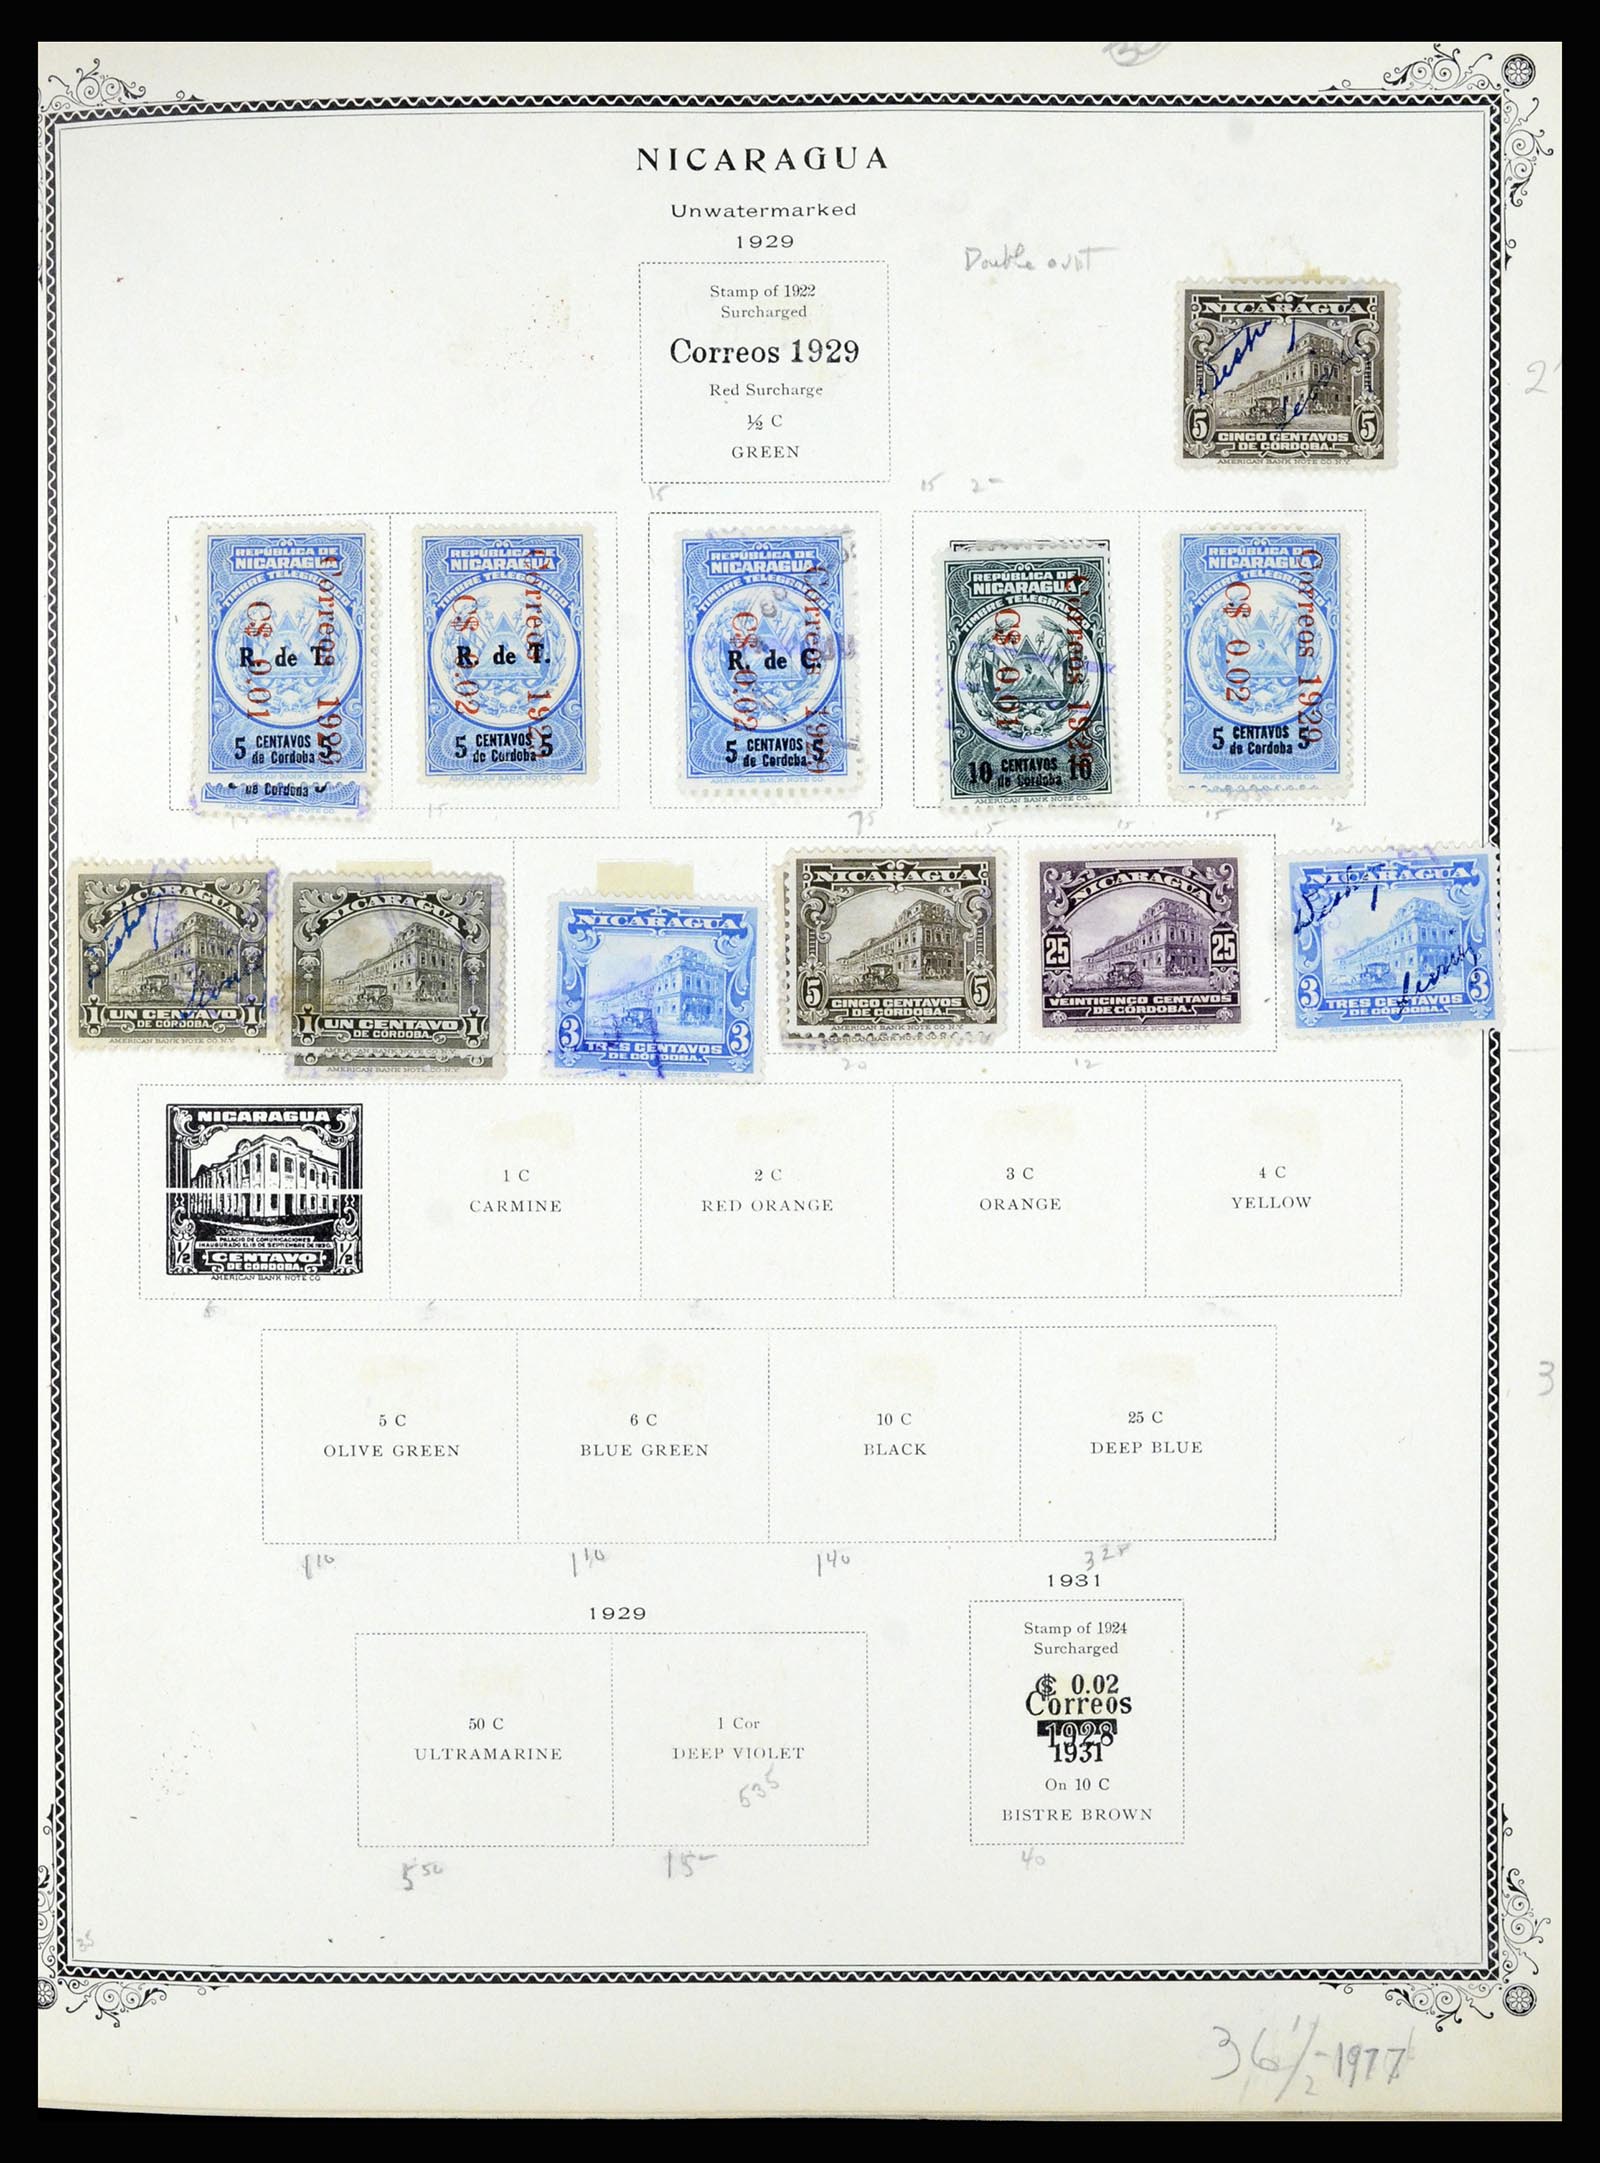 36494 099 - Stamp collection 36494 Nicaragua 1902-1945.